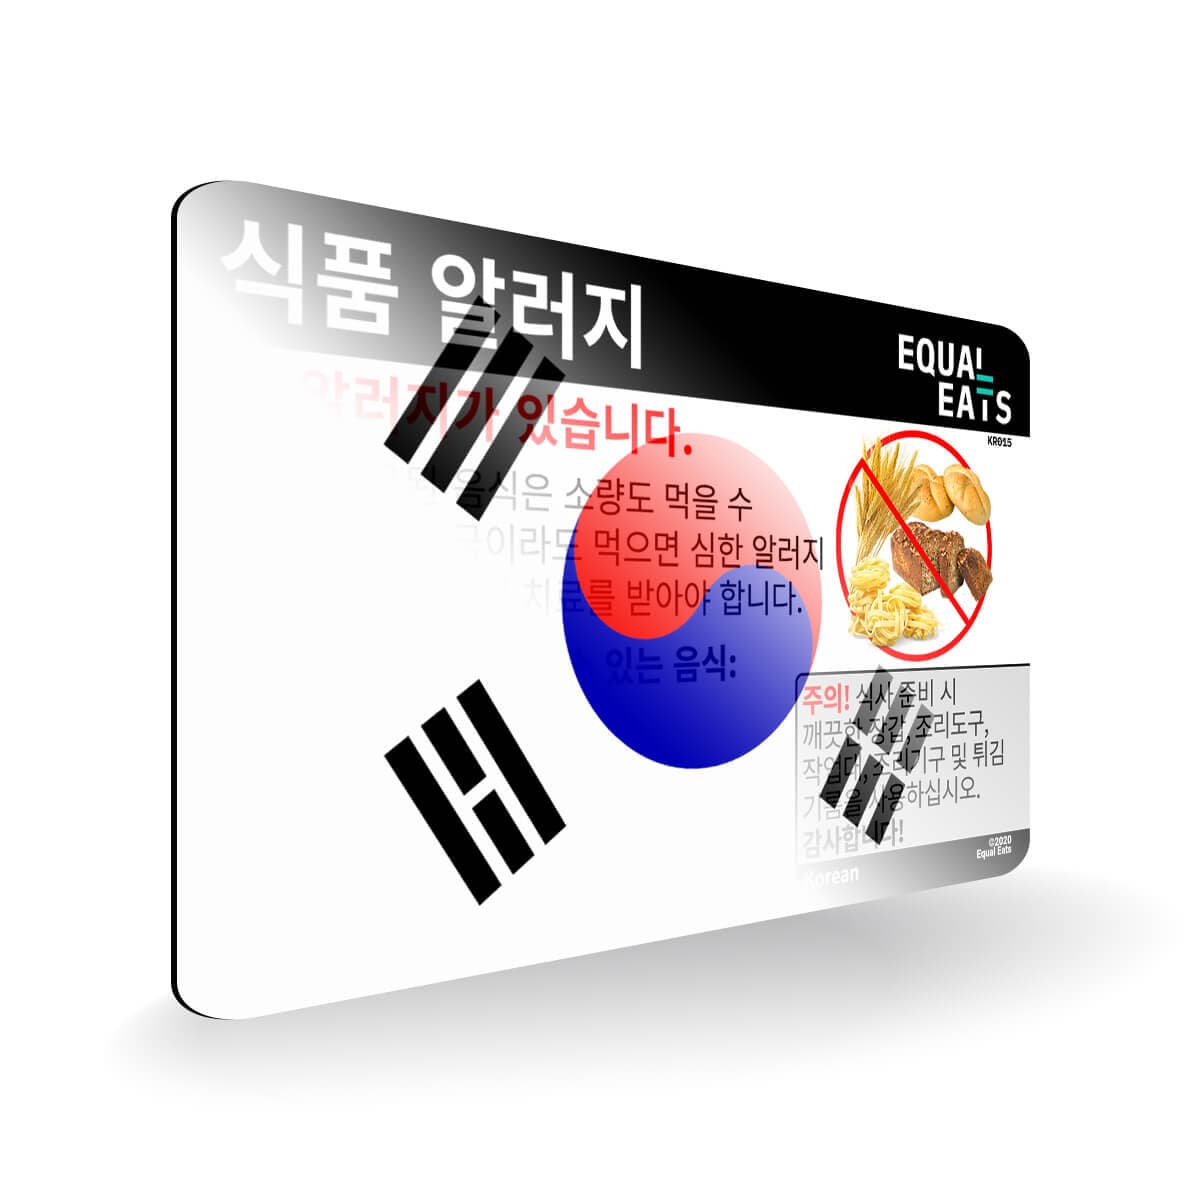 Wheat Allergy in Korean. Wheat Allergy Card for Korea